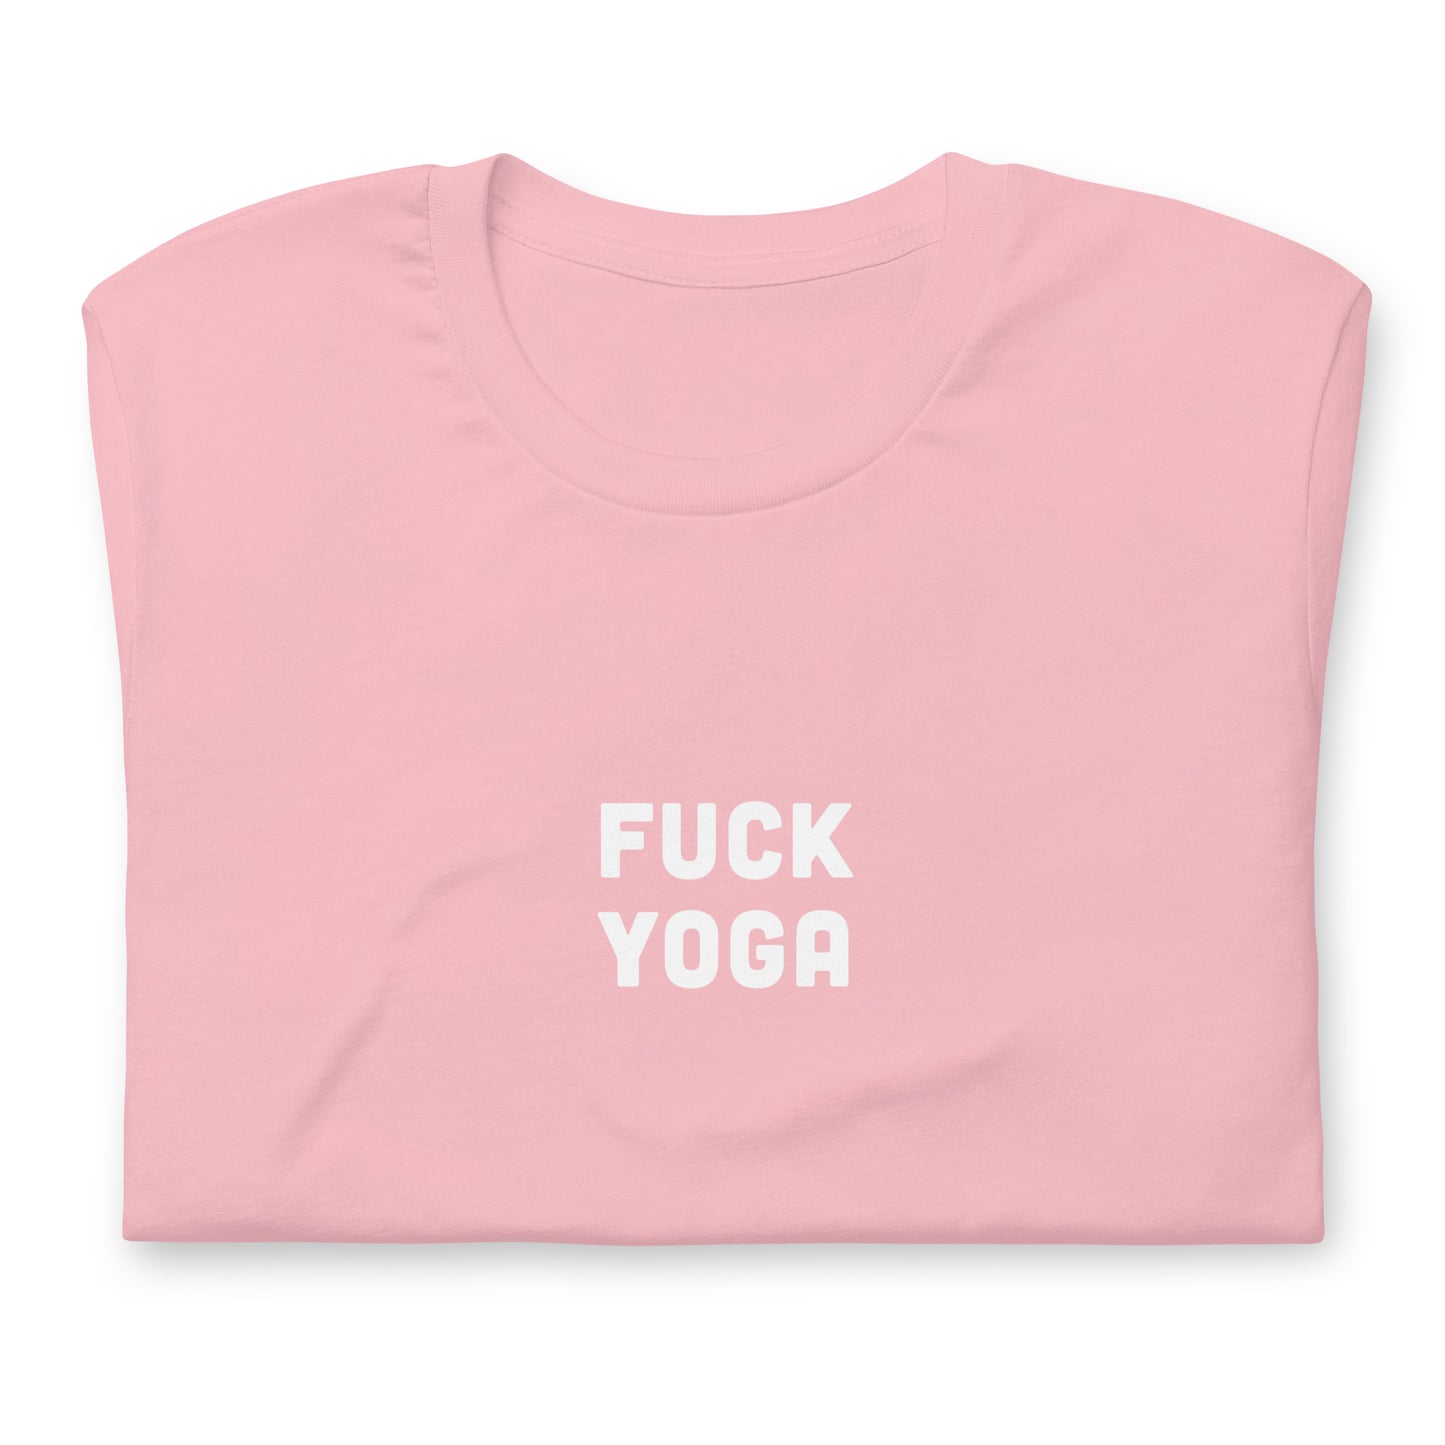 Fuck Yoga T-Shirt Size S Color Asphalt